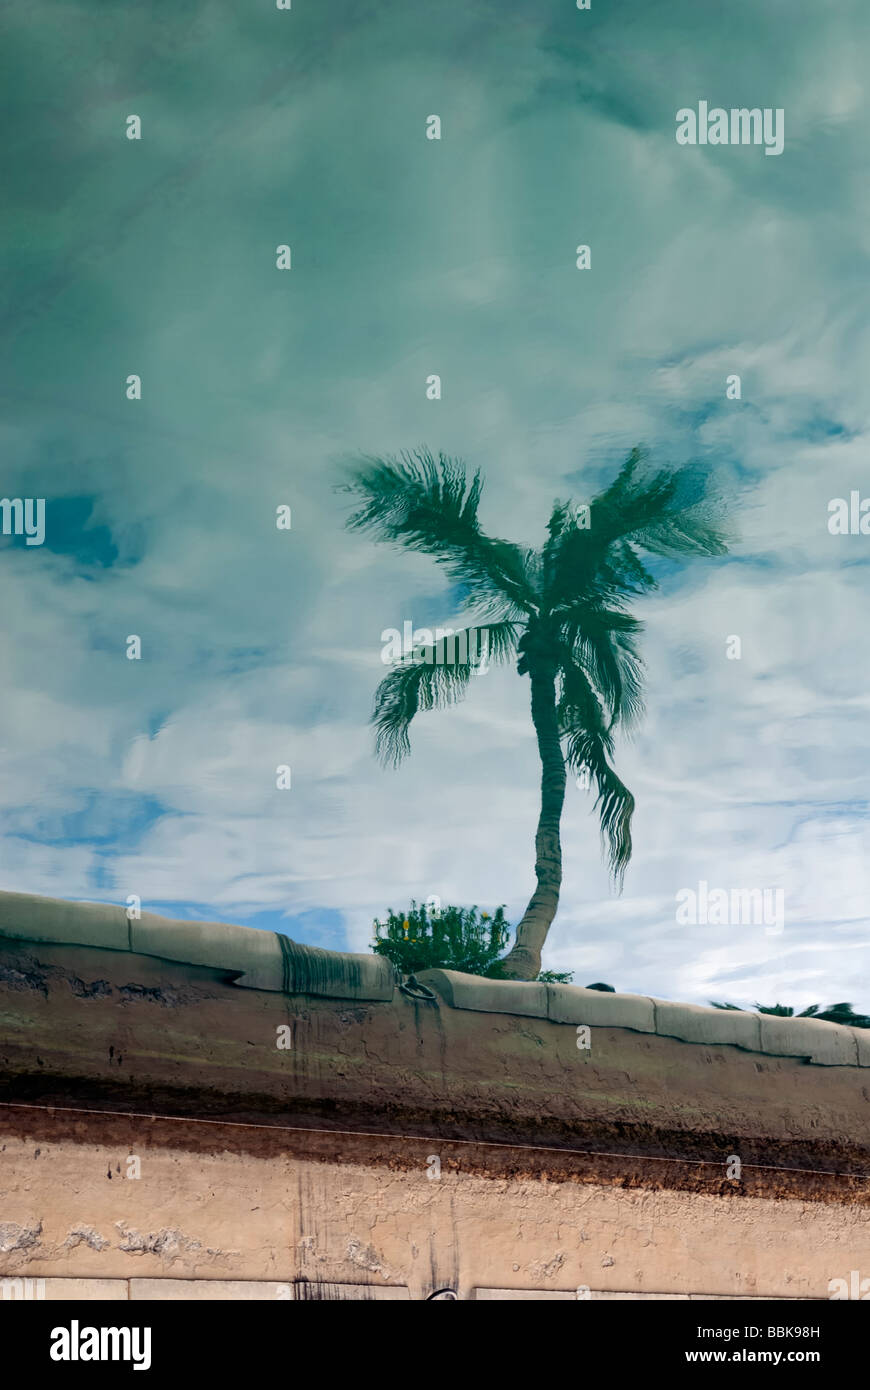 Un palmier la réflexion sur l'océan Atlantique dans le port de Puerto Rico. Puerto Rico, Gran Canaria, Îles Canaries, Espagne, Europe. Banque D'Images